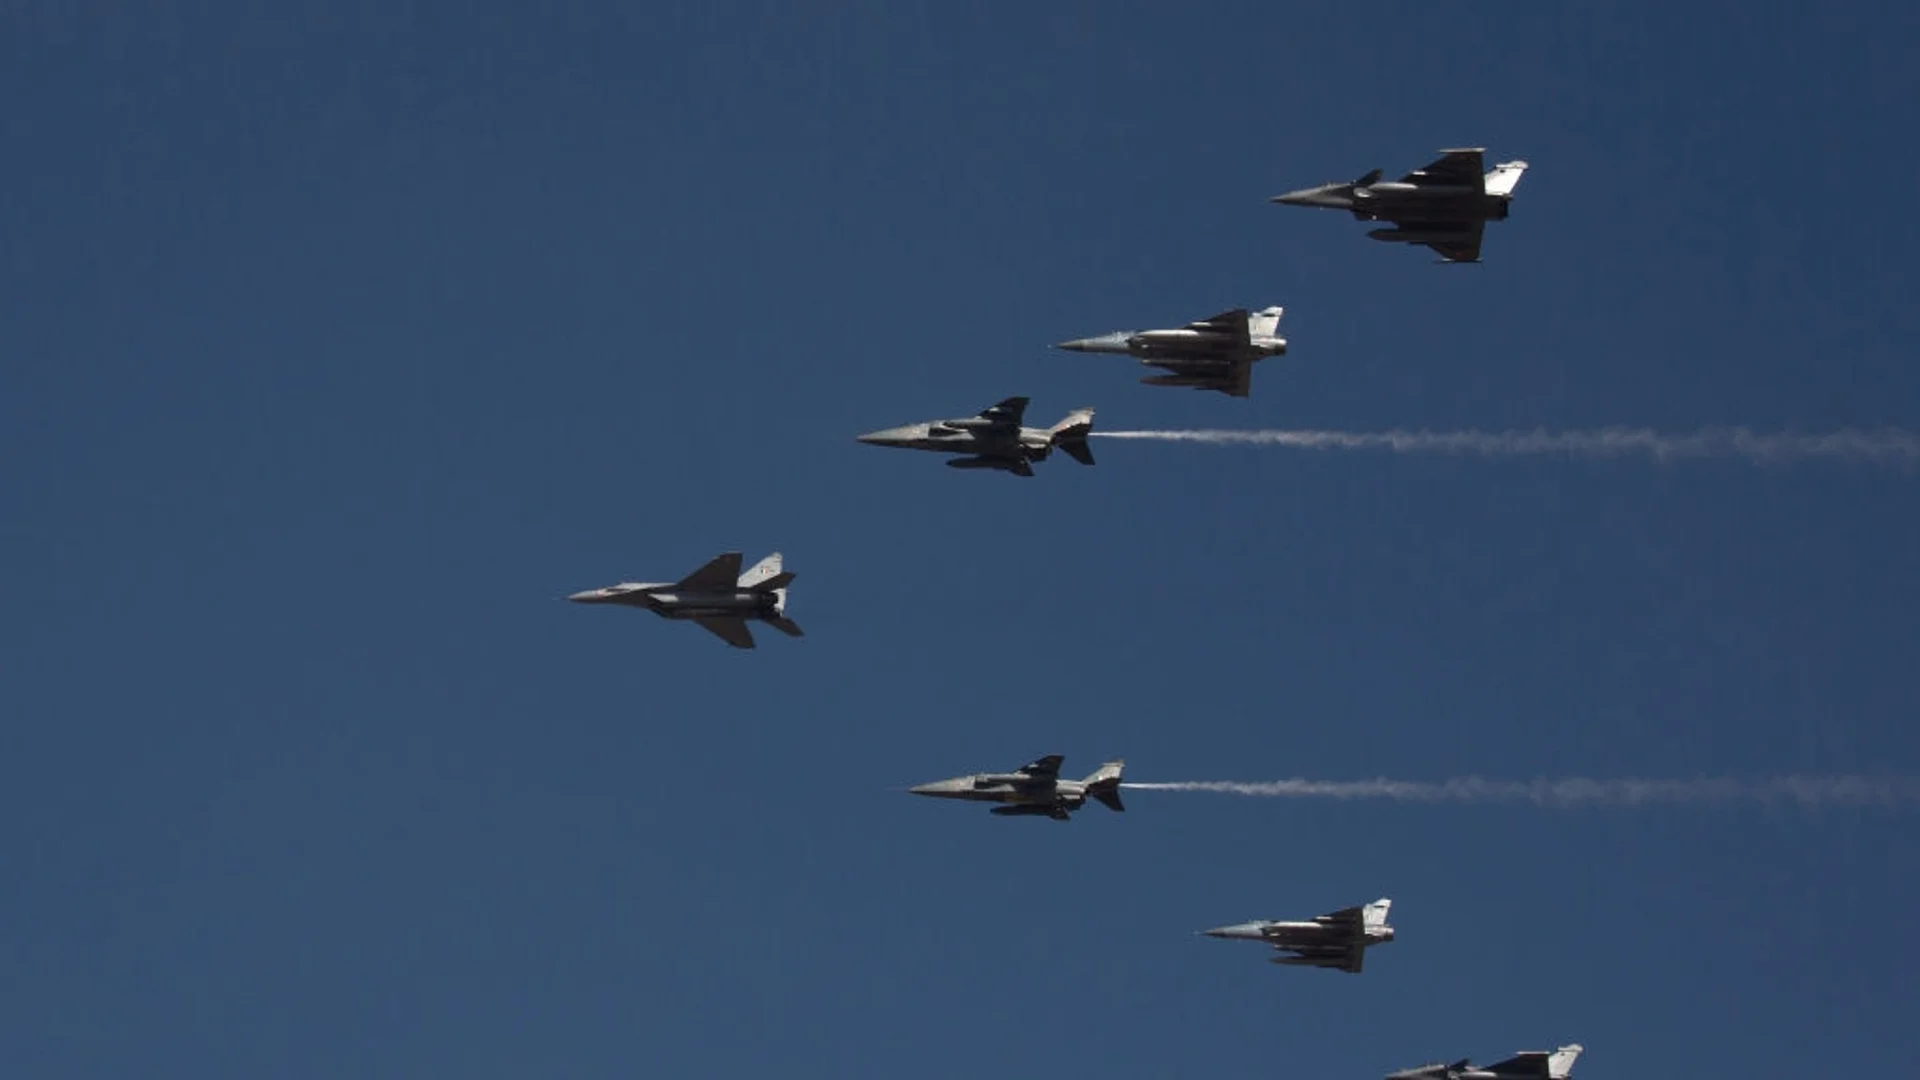 Подсилване на НАТО: Франция праща изтребители Mirage 2000-5 в Литва (ВИДЕО)